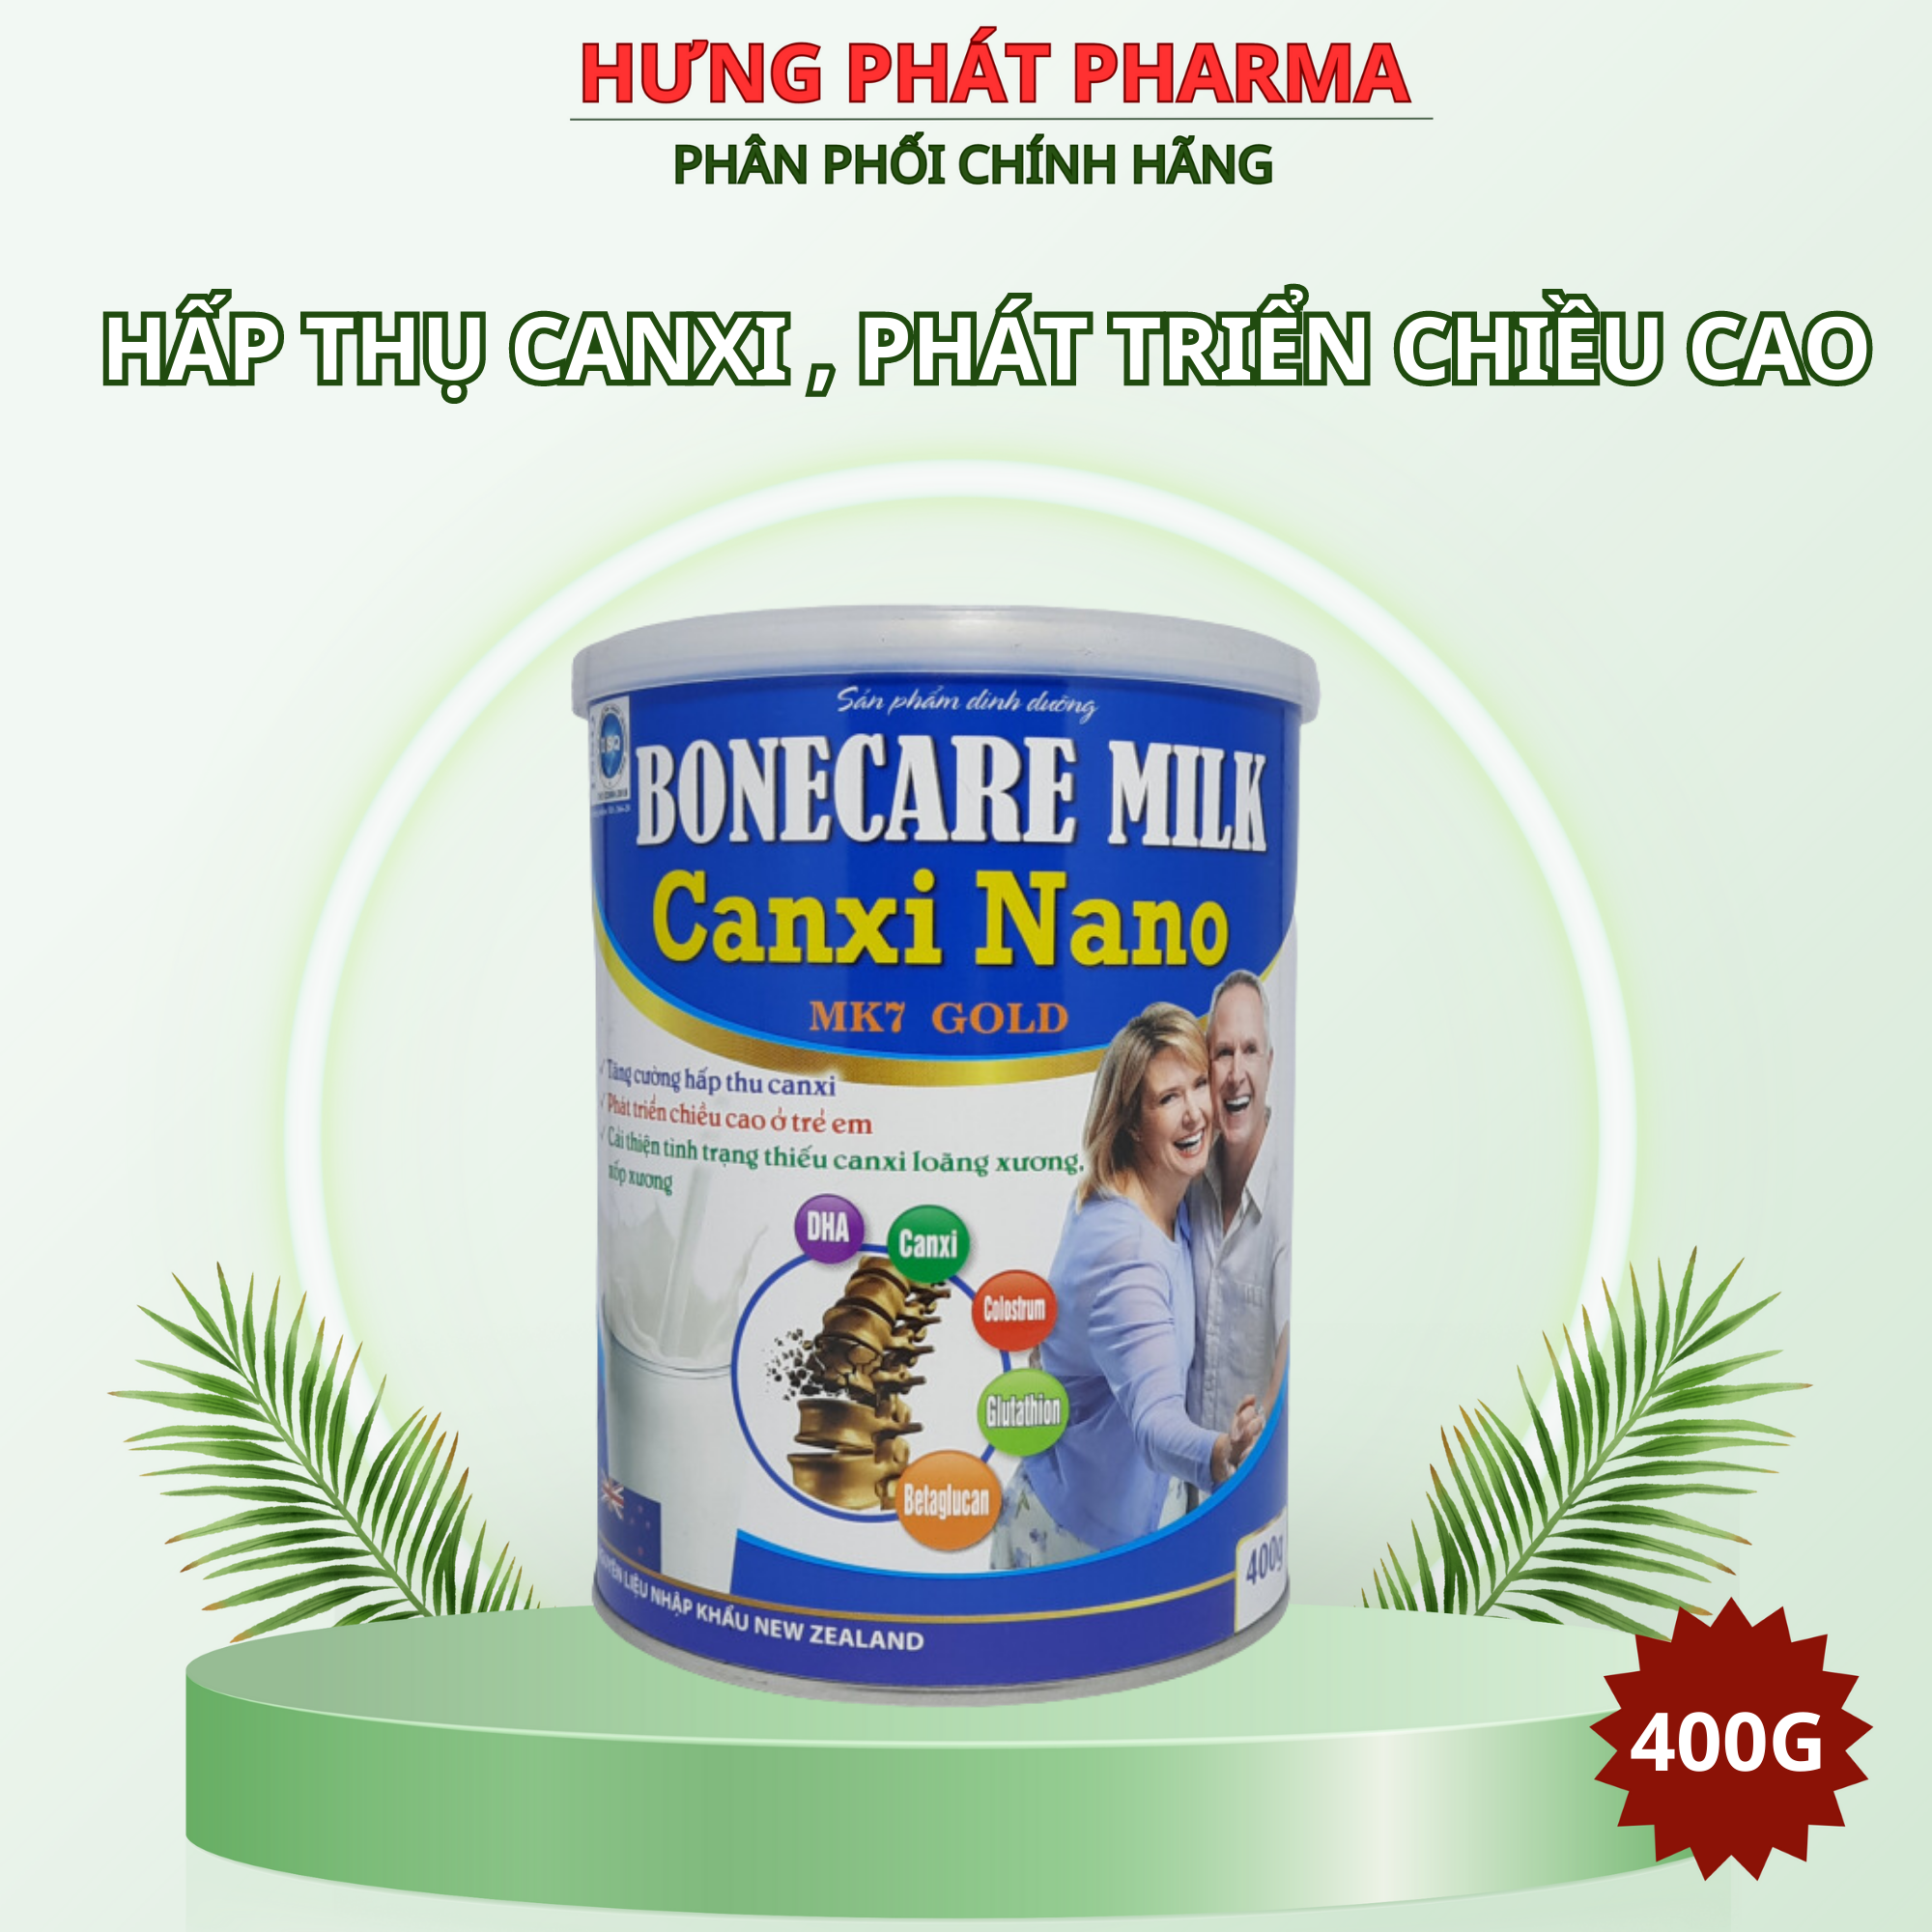 Sữa bột Bonecare Milk Canxi Nano MK7 Gold- tăng cường hấp thu canxi phát triển chiều cao ở trẻ em cải thiện sức khoẻ Hộp 400g – CNC MINH CHUNG